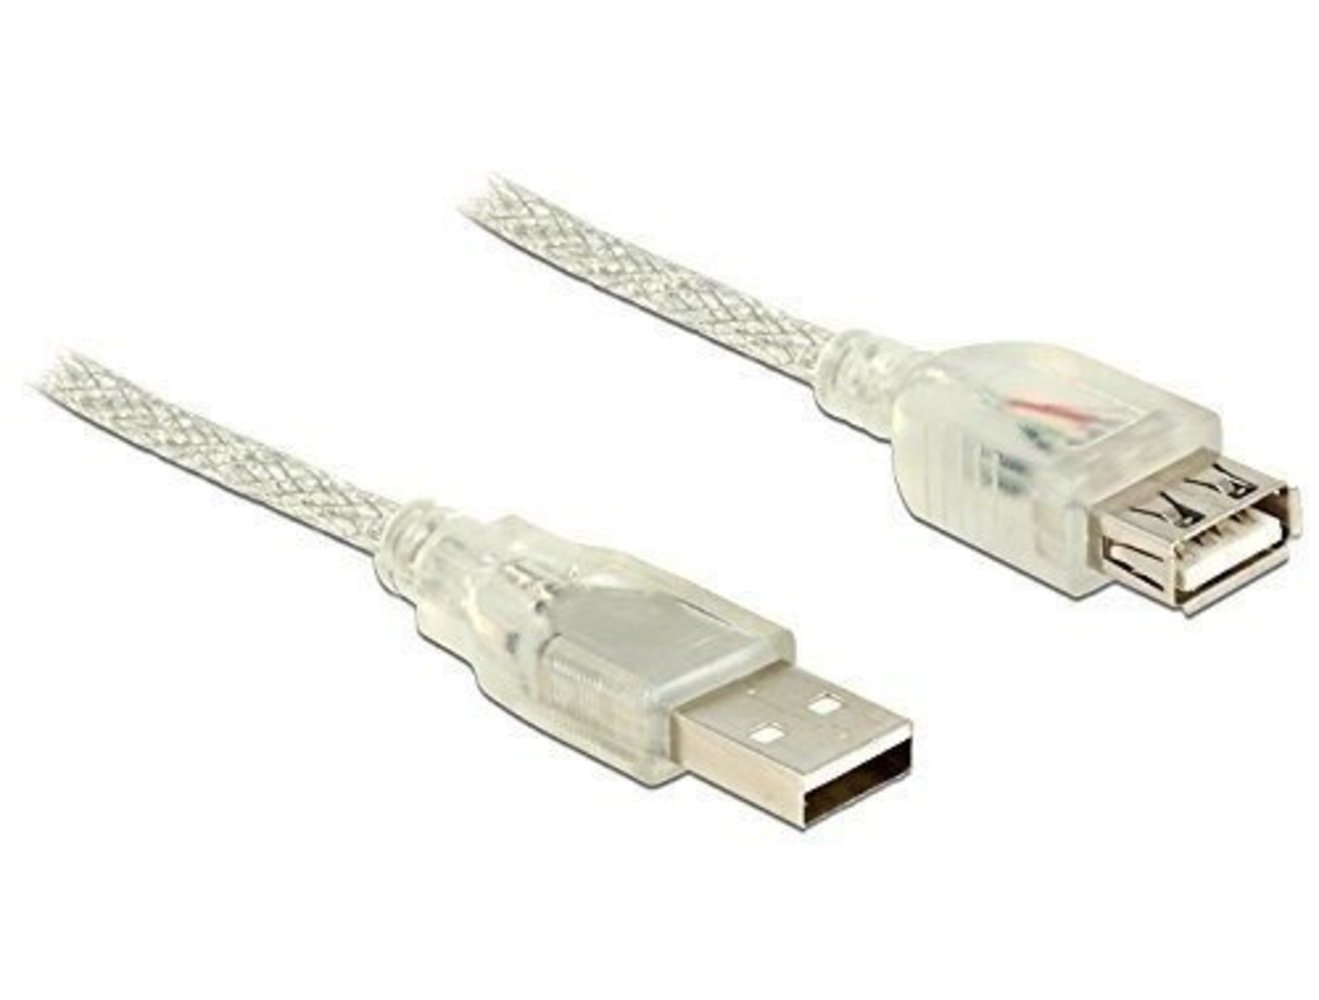 DELOCK Verlängerungskabel USB 2.0 Typ-A Stecker > USB 2.0 Typ-A Buchse 1 m transparent - Hohe Qualität und zuverlässige Signalübertragung